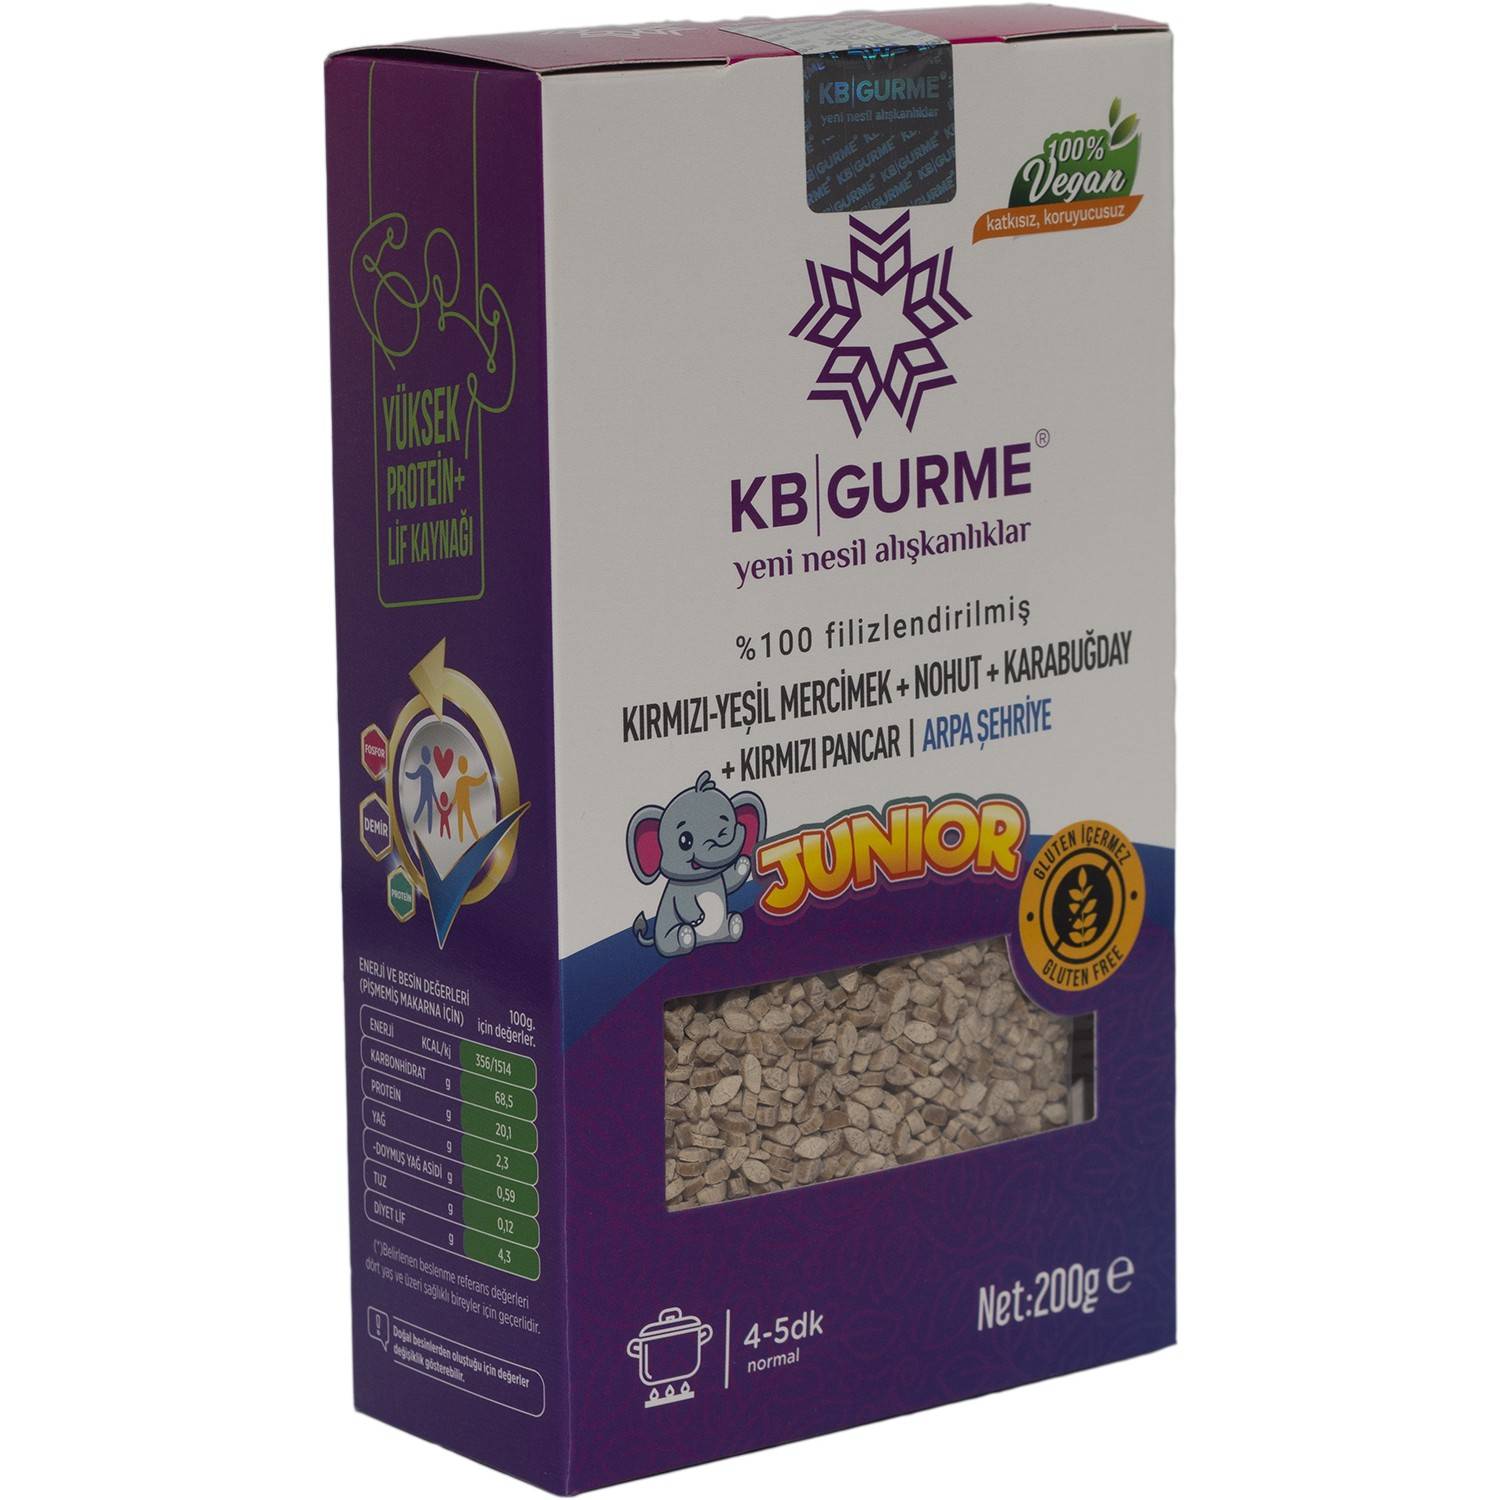 KB Gurme Glutensiz & Vegan Filizlendirilmiş Bakliyat Unlarından Junior  Arpa Şehriye 200 Gr